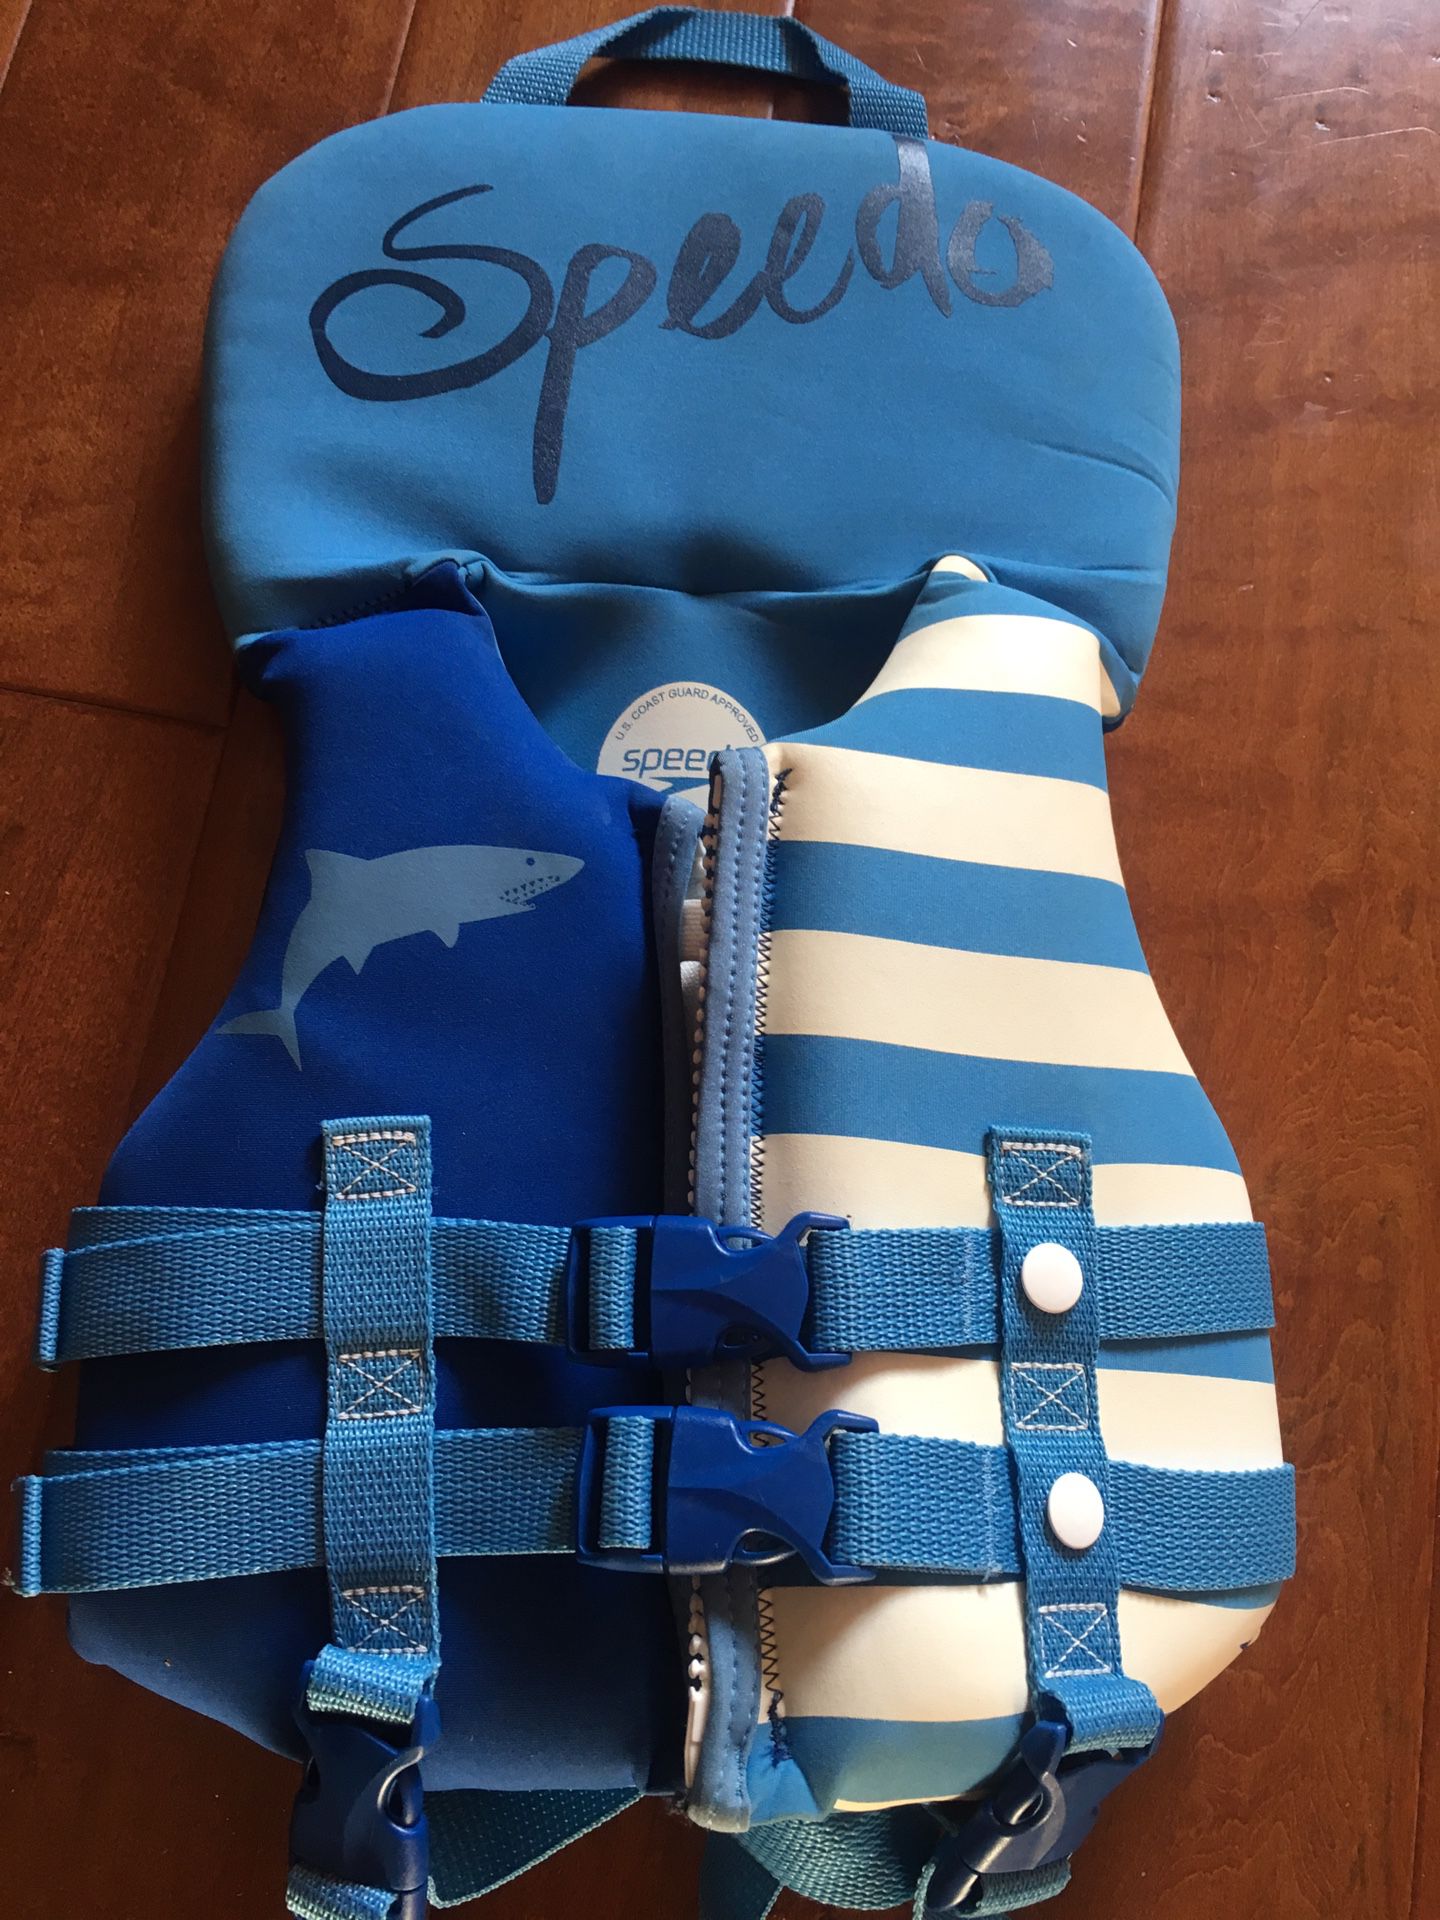 Speedo infant life vest